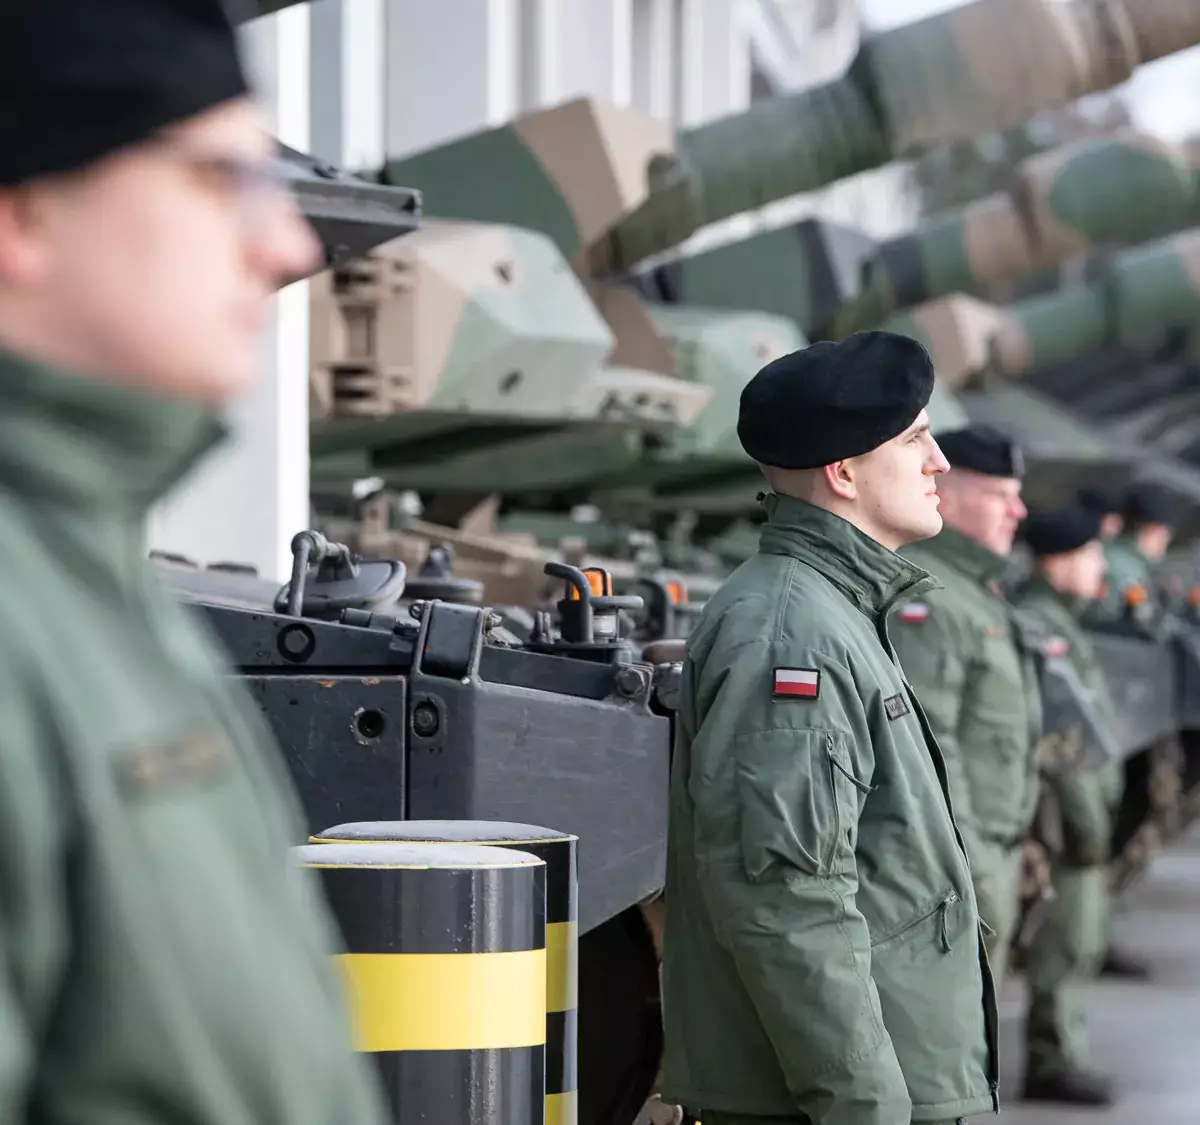 Поляки против поставок оружия Украине. Но будут делать то, что прикажут США